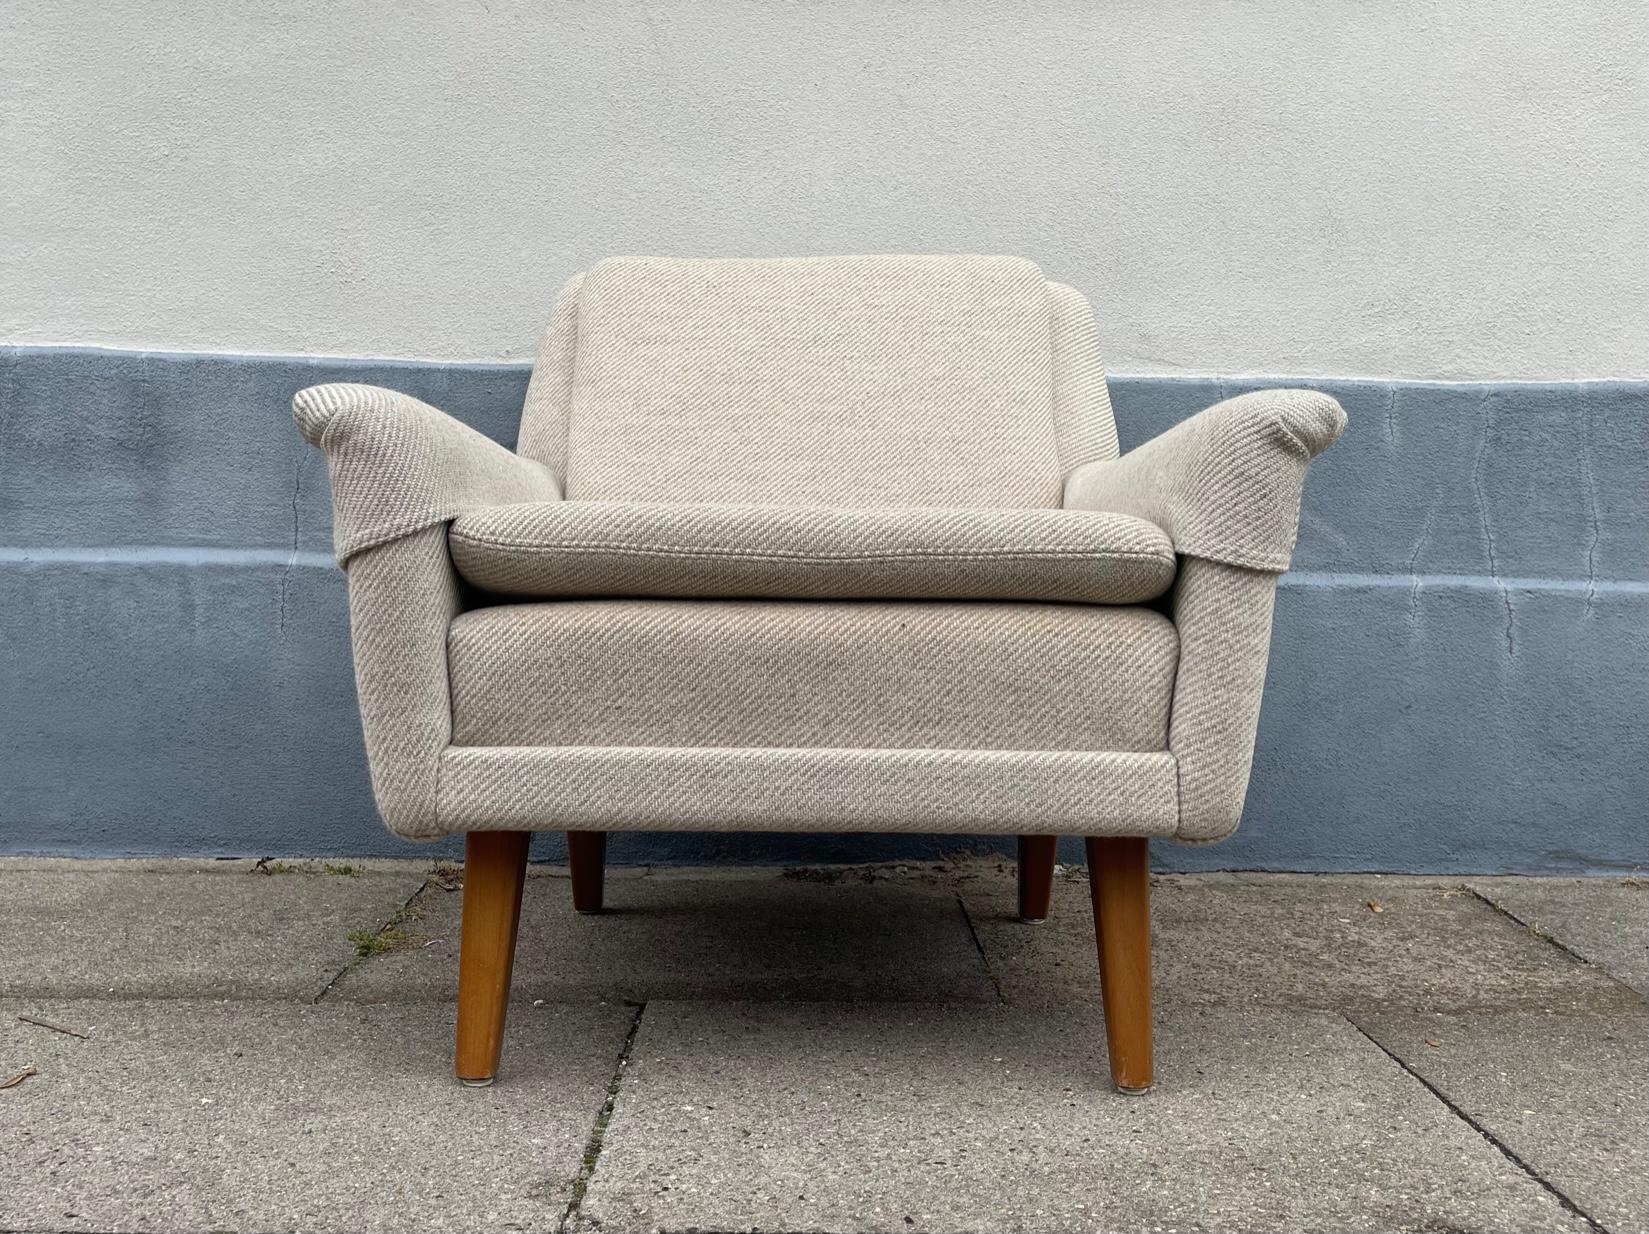 Der Sessel wurde 1959 vom schwedischen Architekten Folke Ohlsson entworfen und in den 1960er Jahren von Fritz Hansen in Dänemark hergestellt. Diese spezielle Version ist mit einer weiß-sandfarbenen Wollpolsterung von Kvadrat und massiven Beinen aus